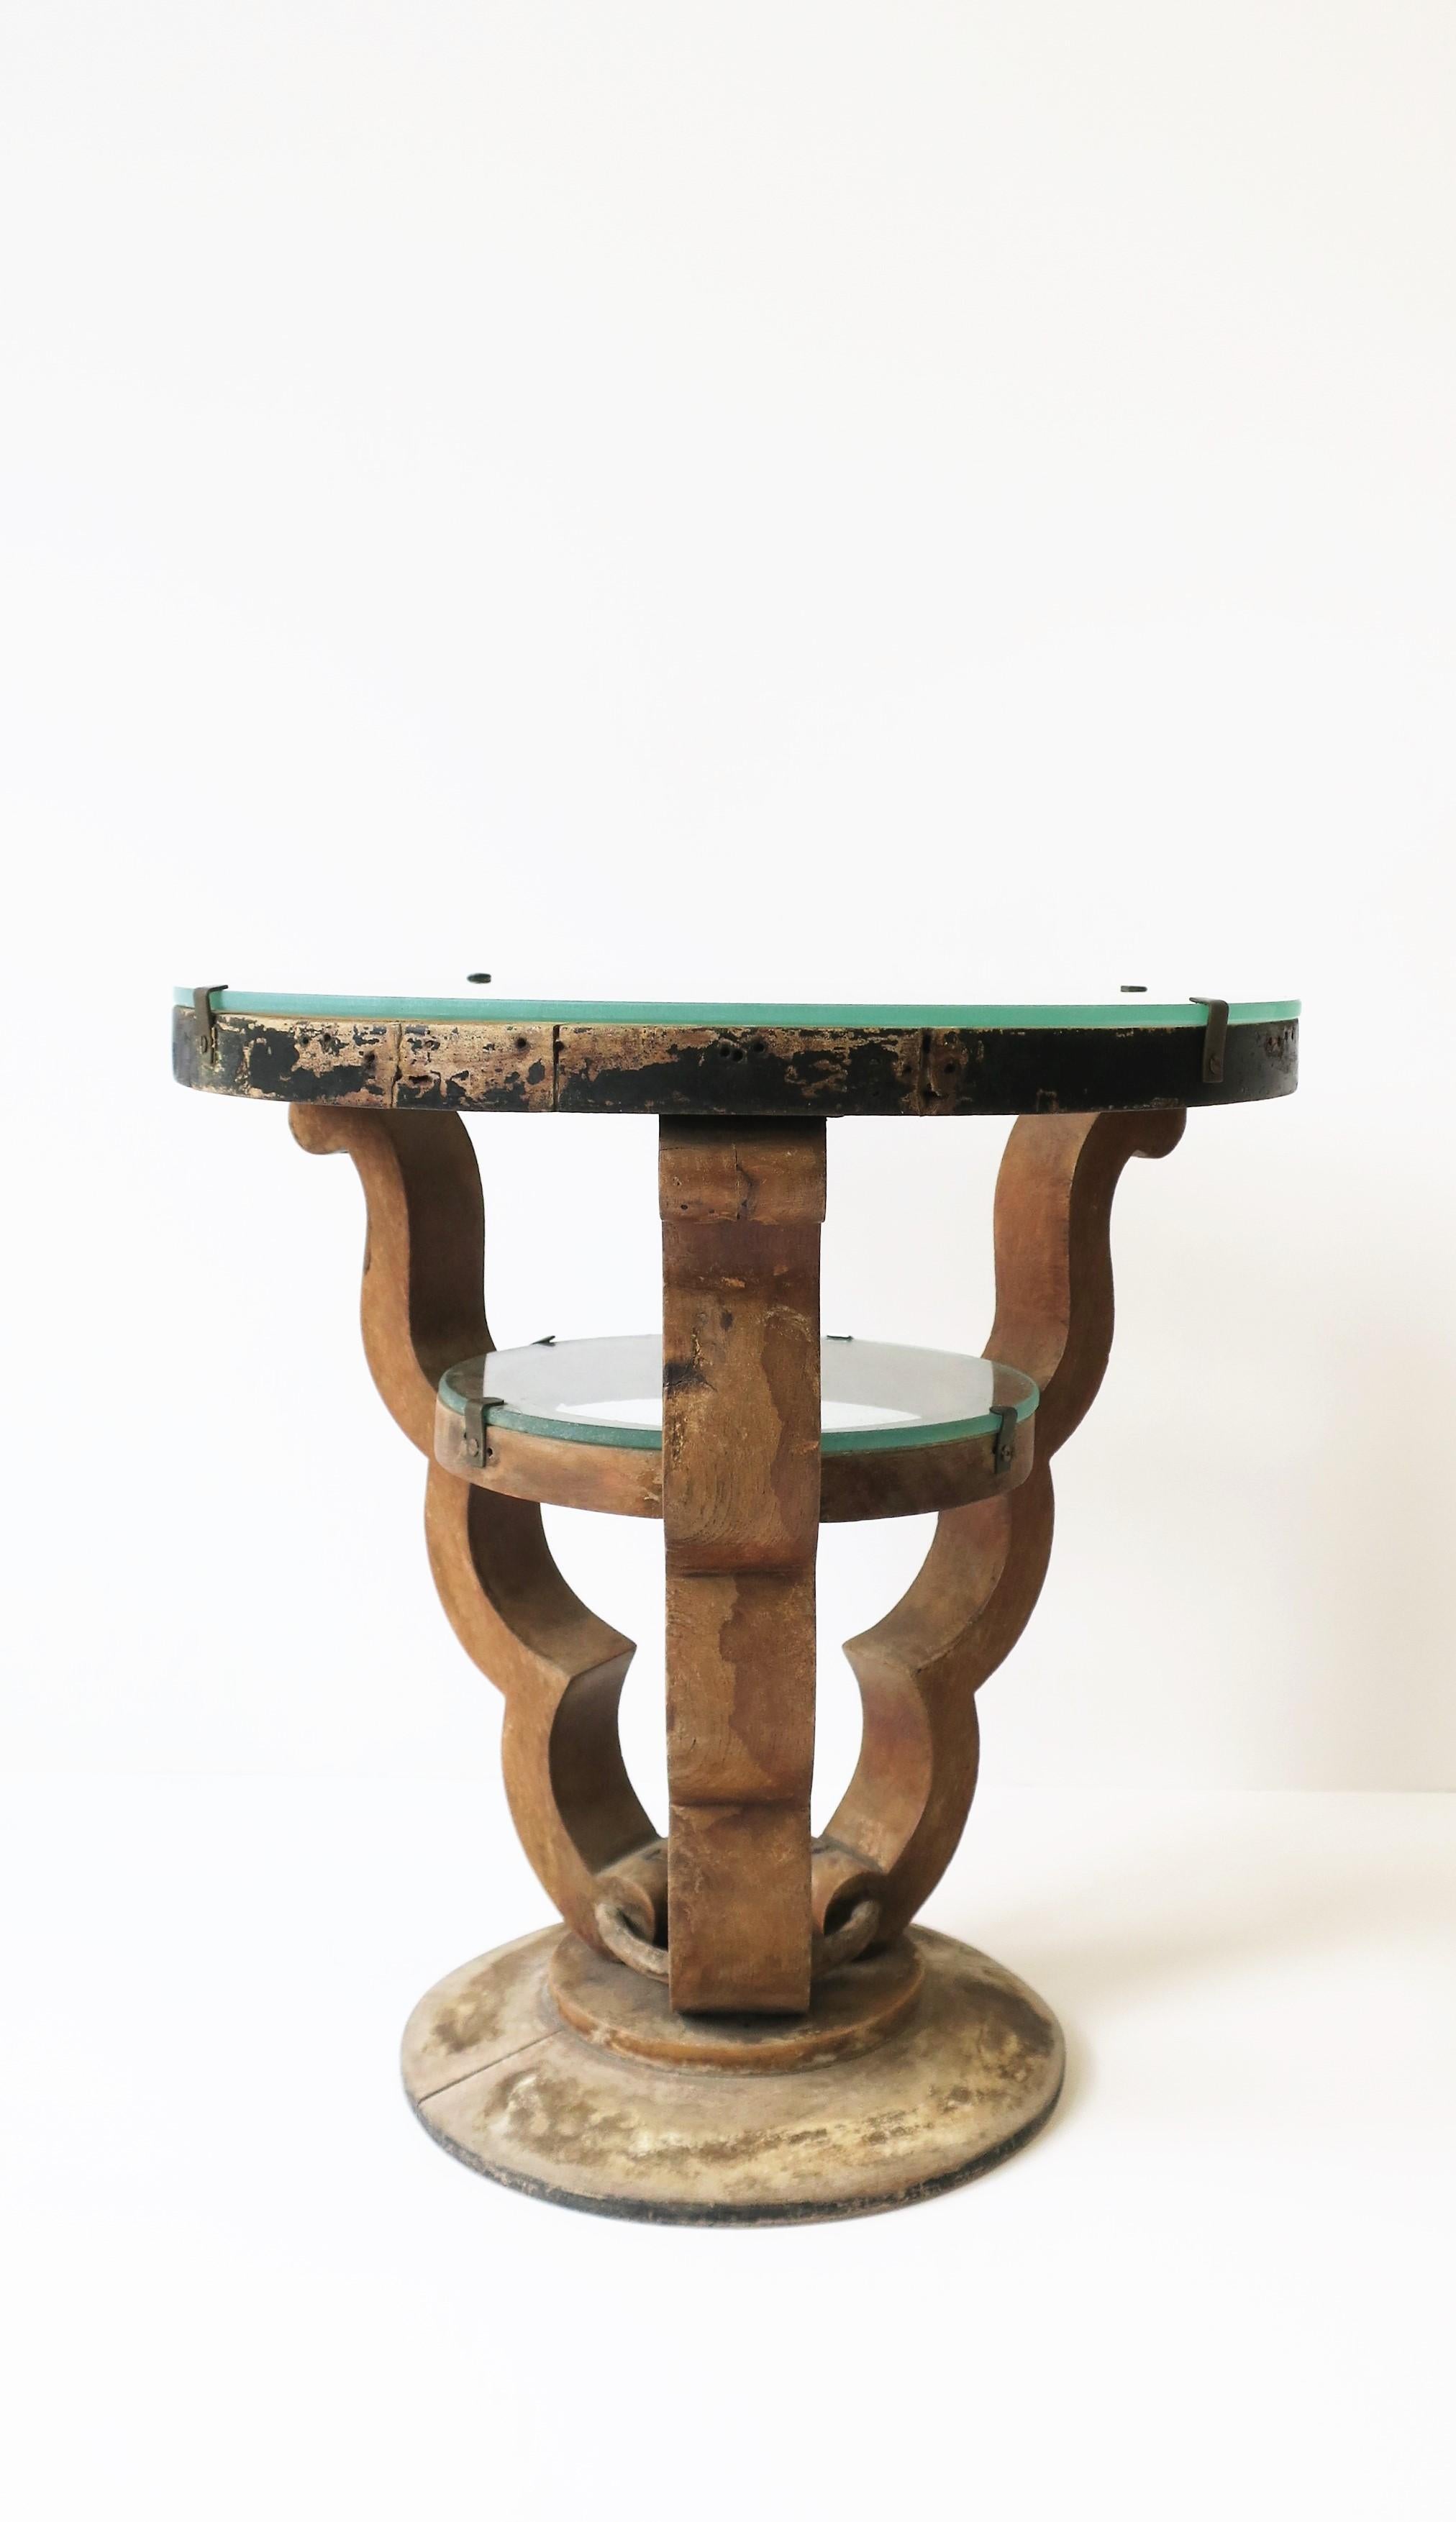 Petite table ronde rustique en bois et verre, de style Art Déco, vers la fin du 20e siècle. Cette table d'appoint ou table à boissons présente toutes les caractéristiques du design Art Déco, notamment le plateau rond découpé, l'étagère intérieure